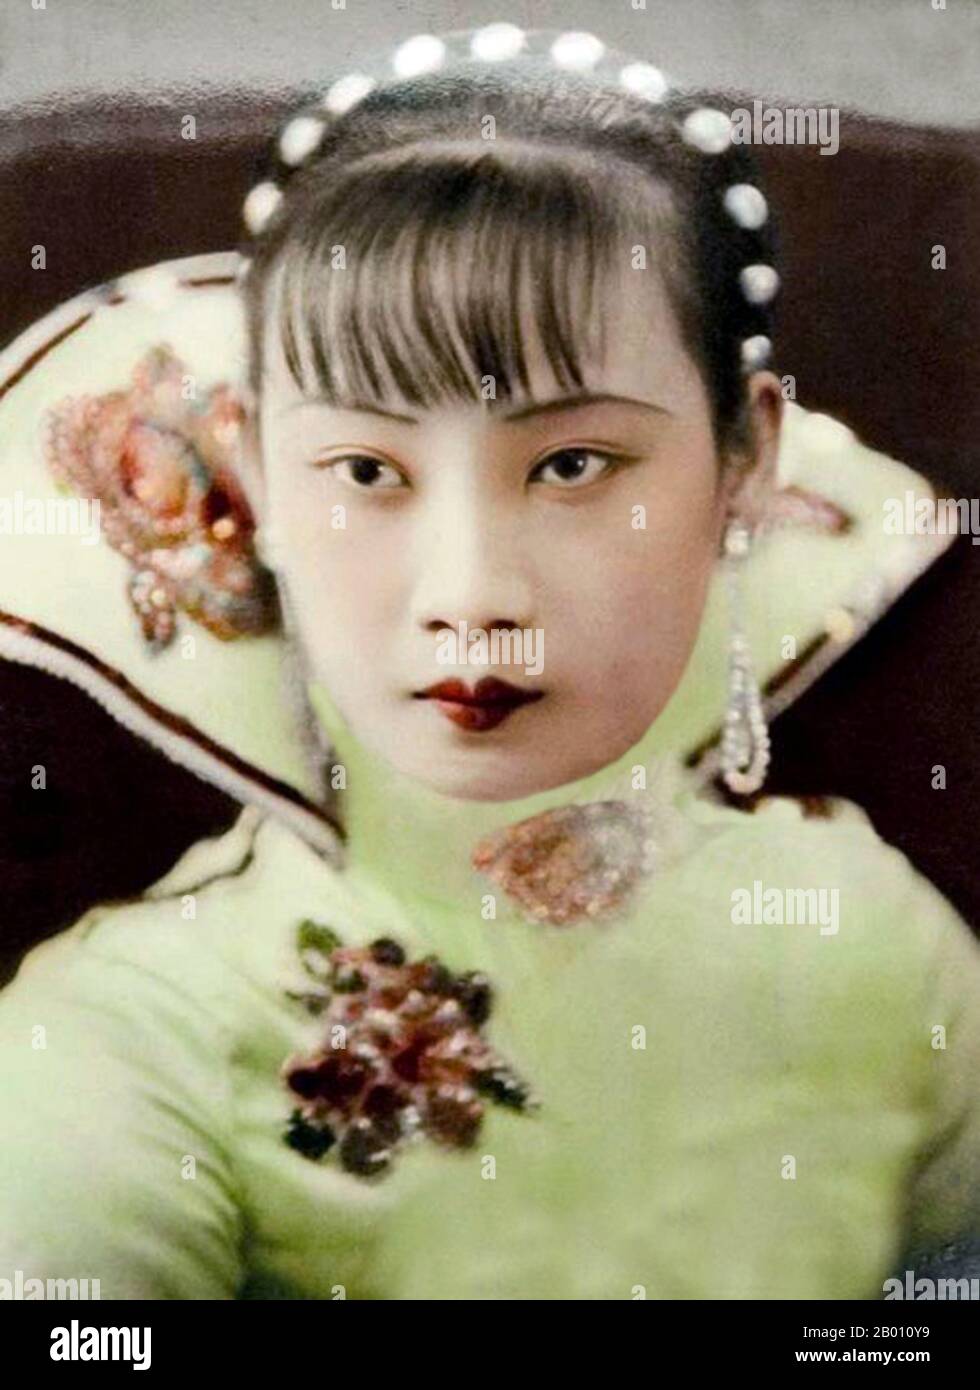 China: Shanghai Schauspielerin Hu die, auch bekannt als 'Butterfly Hu' (1907-1989), 1946. HU die (1907-1989) hatte von Ende 1920s bis 1960s eine Karriere als Filmschauspielerin. Sie hatte ihre brillanteste Periode in den 1930s und 1940s. Anfang 1930s spielte sie die Hauptrolle in Chinas erstem Tonfilm "The Singsong Girl", in dem sie eine gutherzige, aber etwas ignorante Frau porträtiert, die die Misshandlung und Unterdrückung ihres Mannes ohne den geringsten Widerstand aushält. Stockfoto